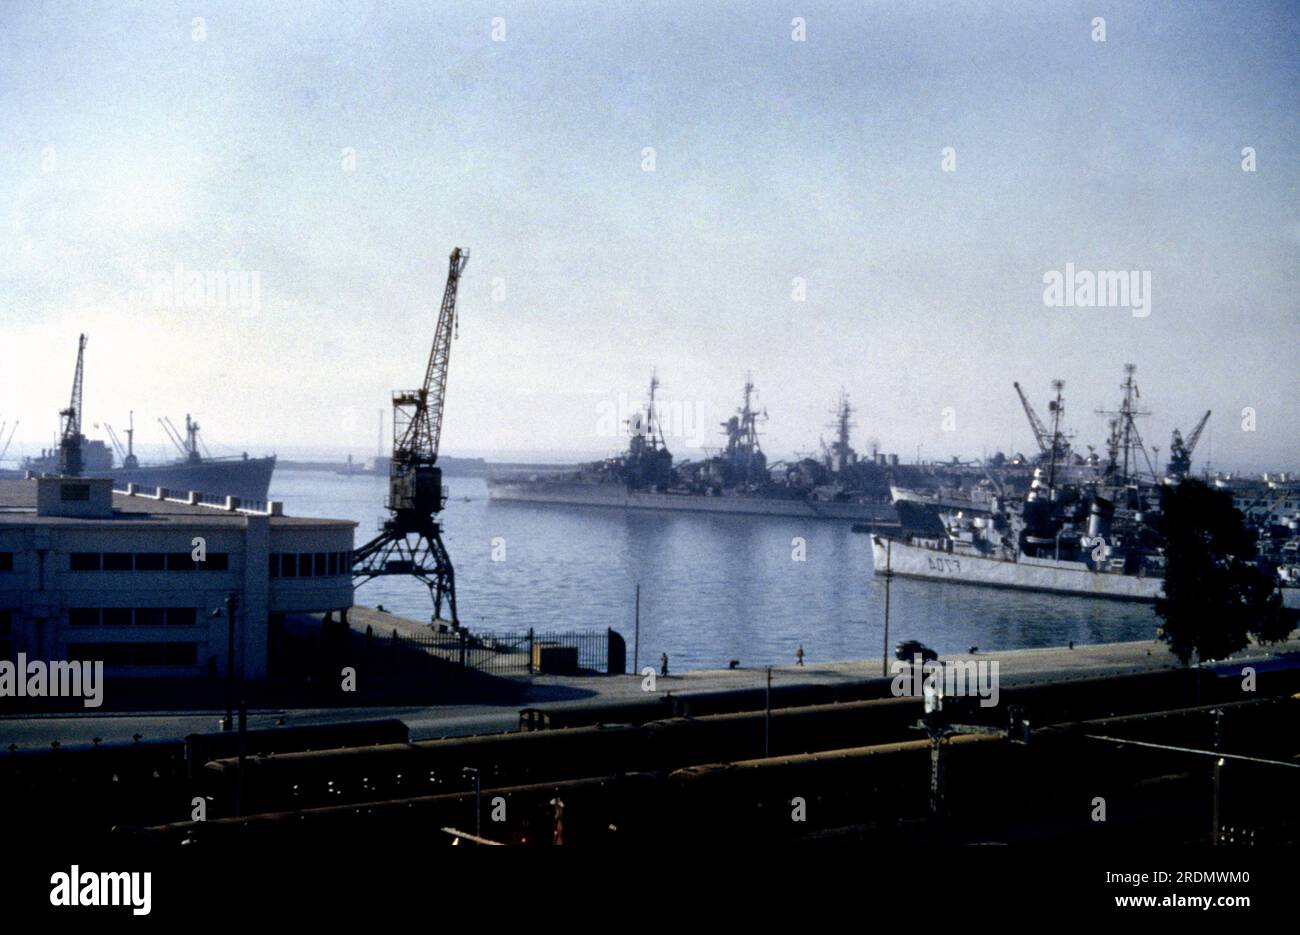 Algiers Algeria Warships In Port Stock Photo